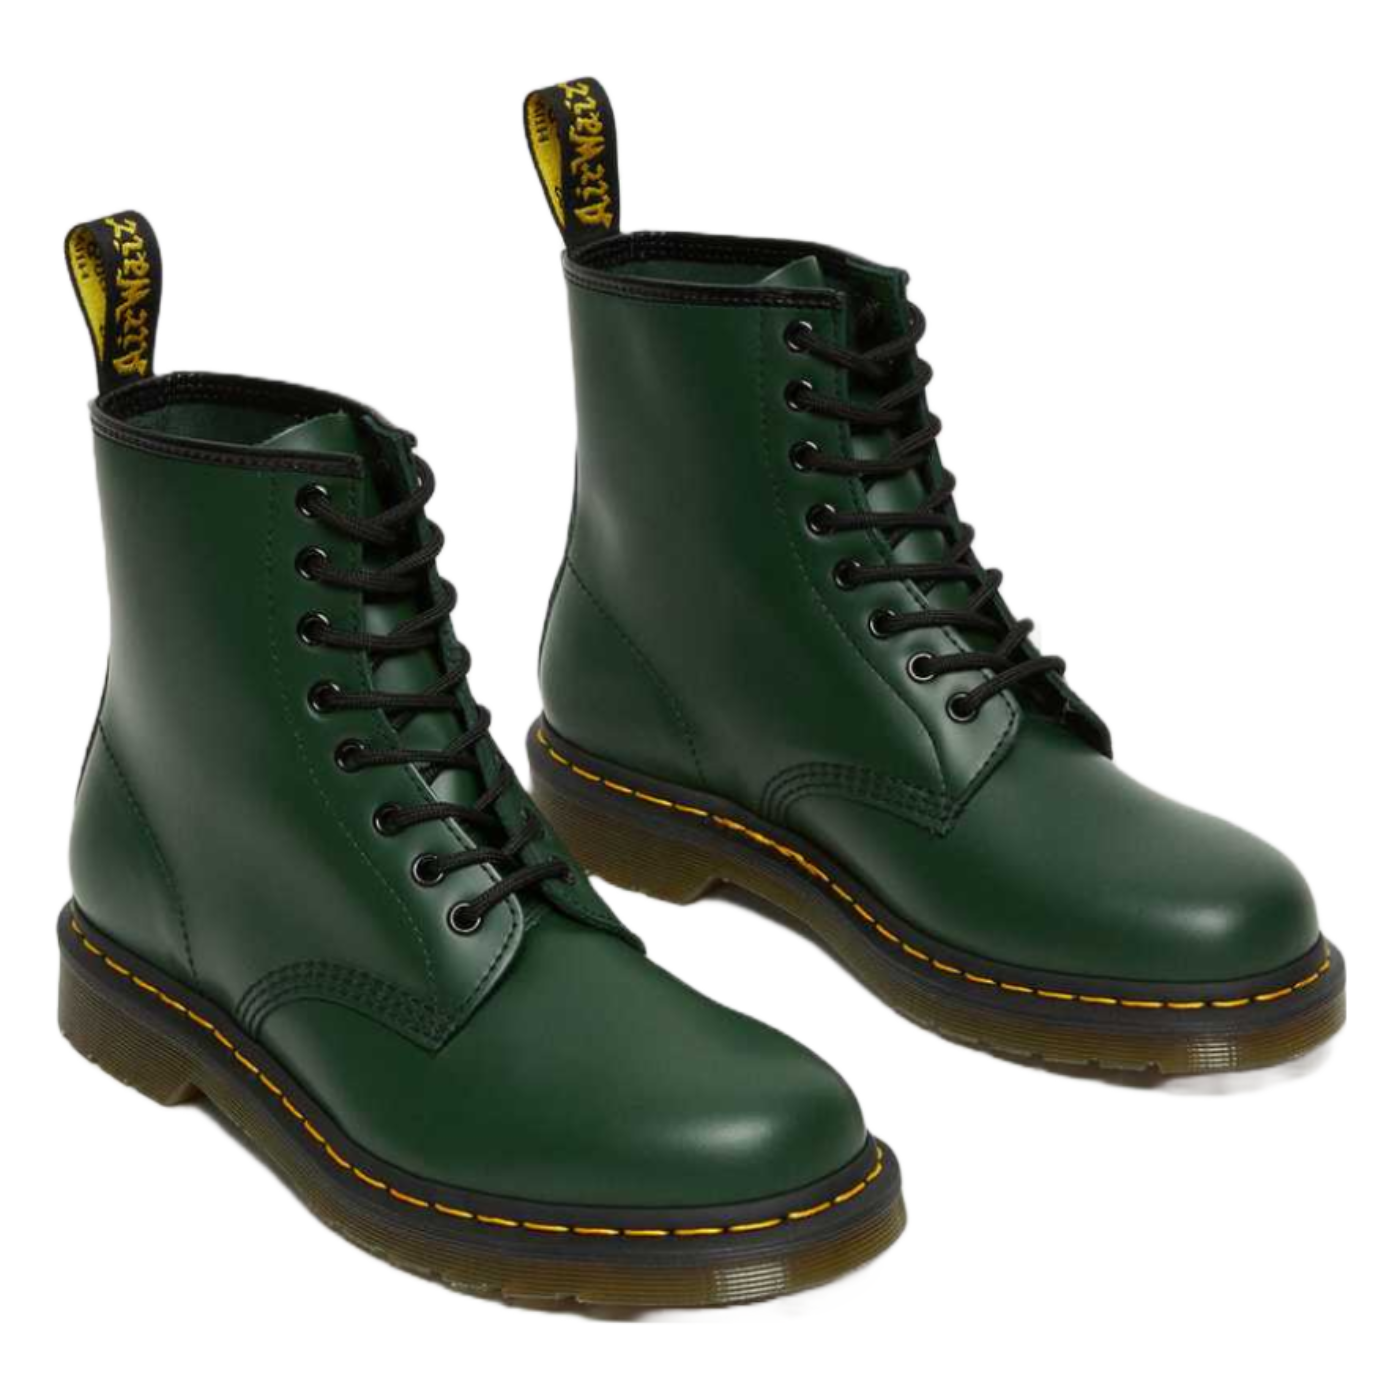 Boot 1460 Green Dr. martens